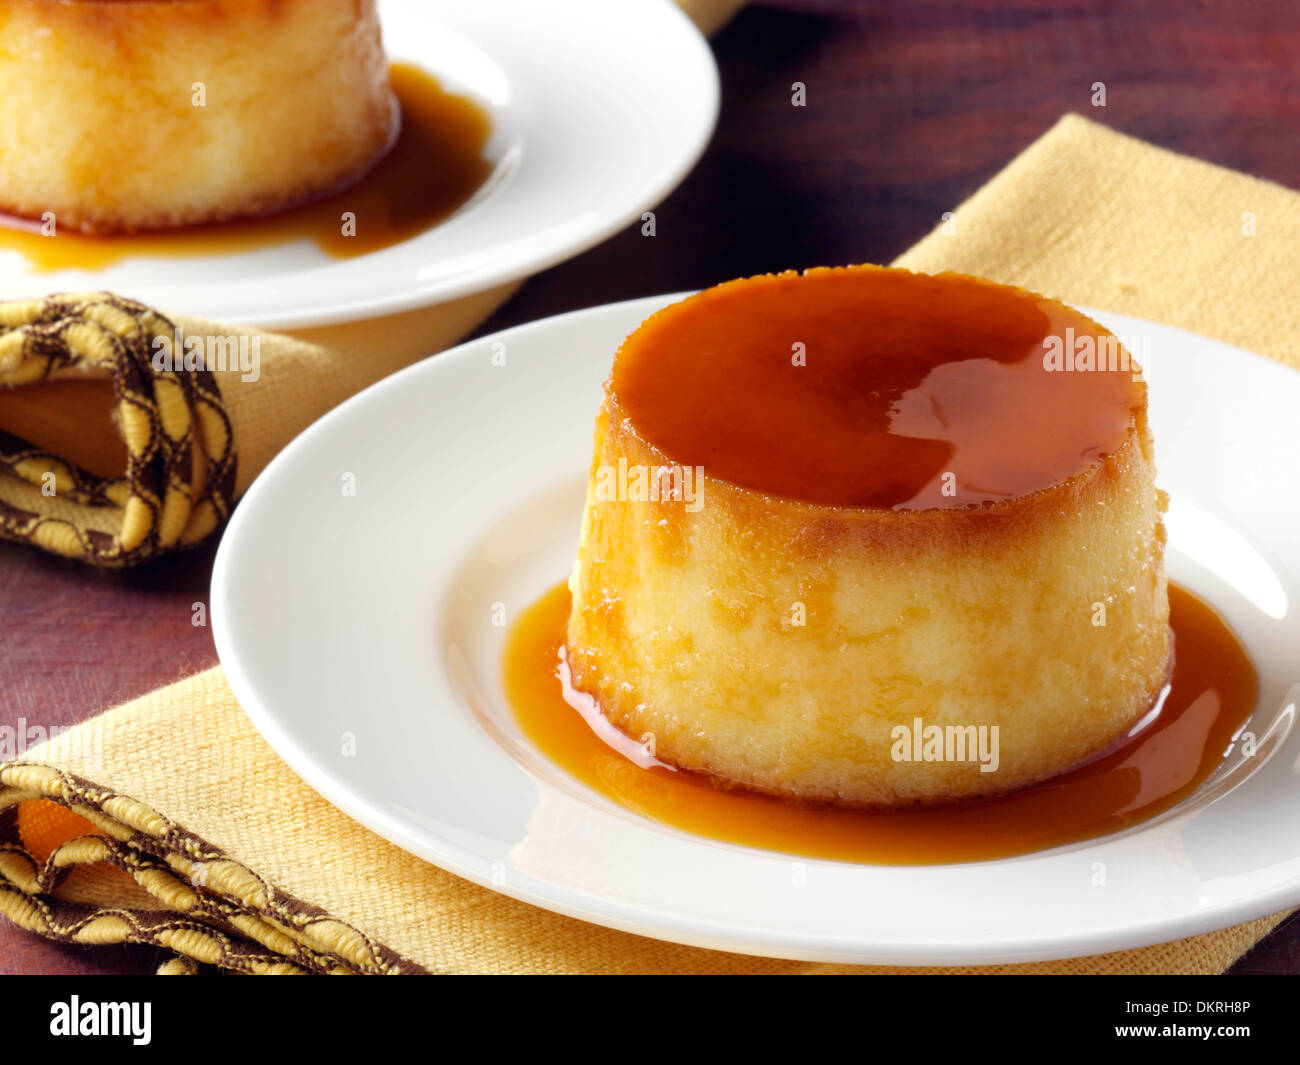 Kubanische kokosnuss flan crème brûlée gourmet dessert -Fotos und ...